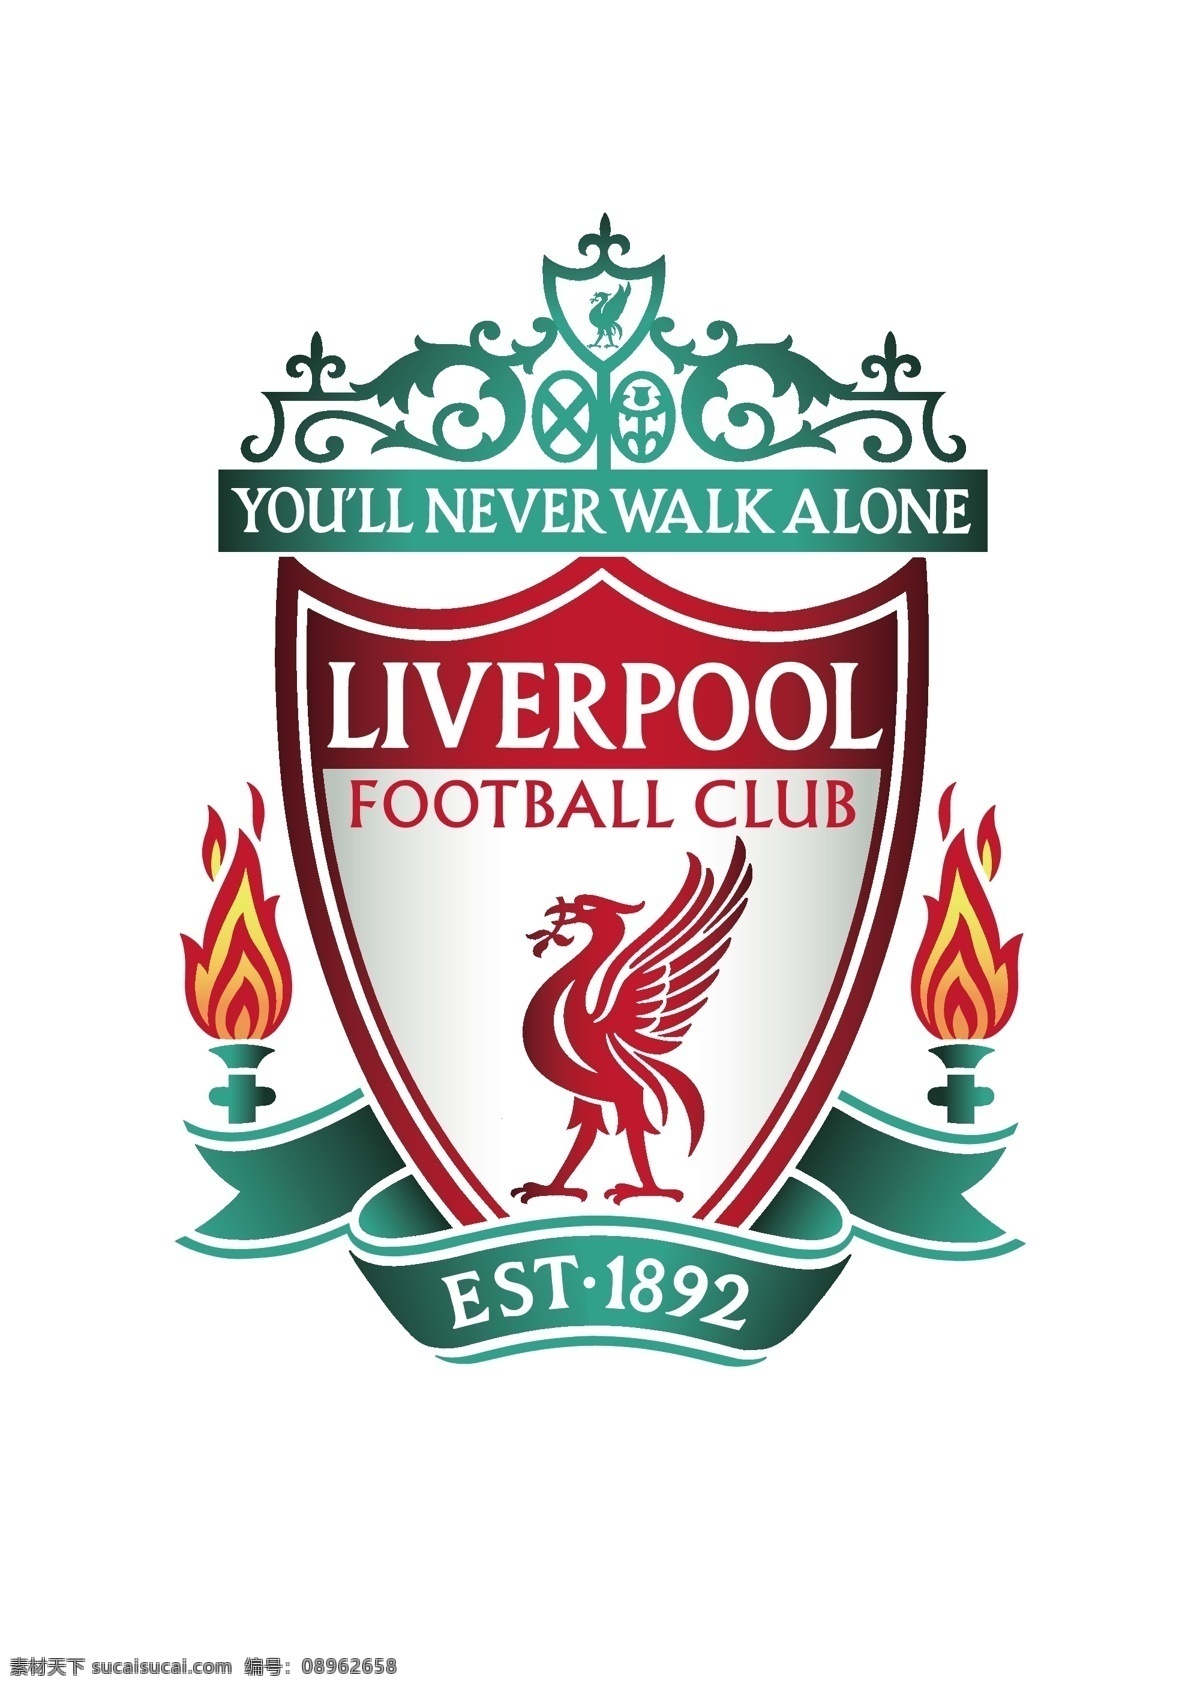 利物浦 足球 俱乐部 徽标 英格兰 超级 联赛 英超 欧冠 欧洲冠军联赛 欧联 欧洲联赛 欧罗巴联赛 欧洲超级杯 欧洲主流联赛 logo设计